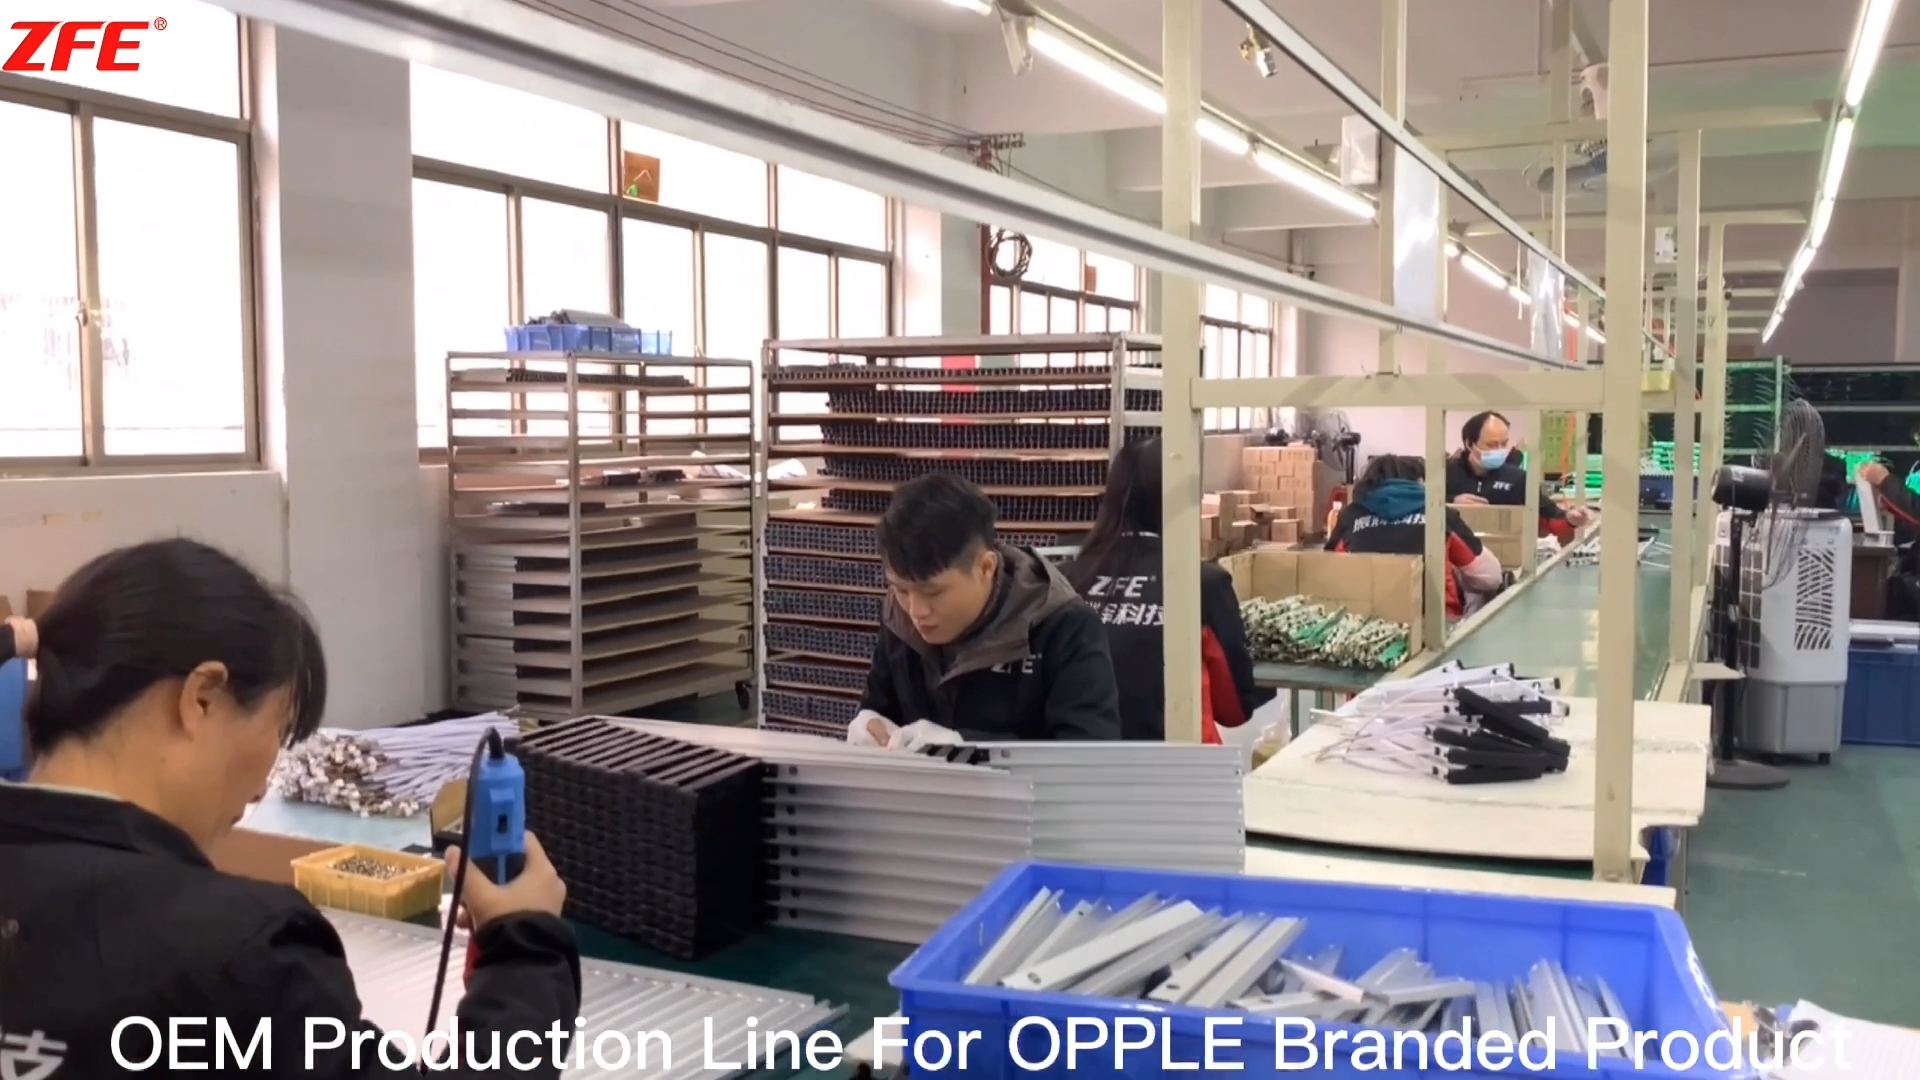 OPPLE ब्रान्डेड उत्पादनका लागि अनुकूलित OEM उत्पादन लाइन - गुआंग्डोंग Zhenhui फायर टेक्नोलोजी द्वारा निर्मित